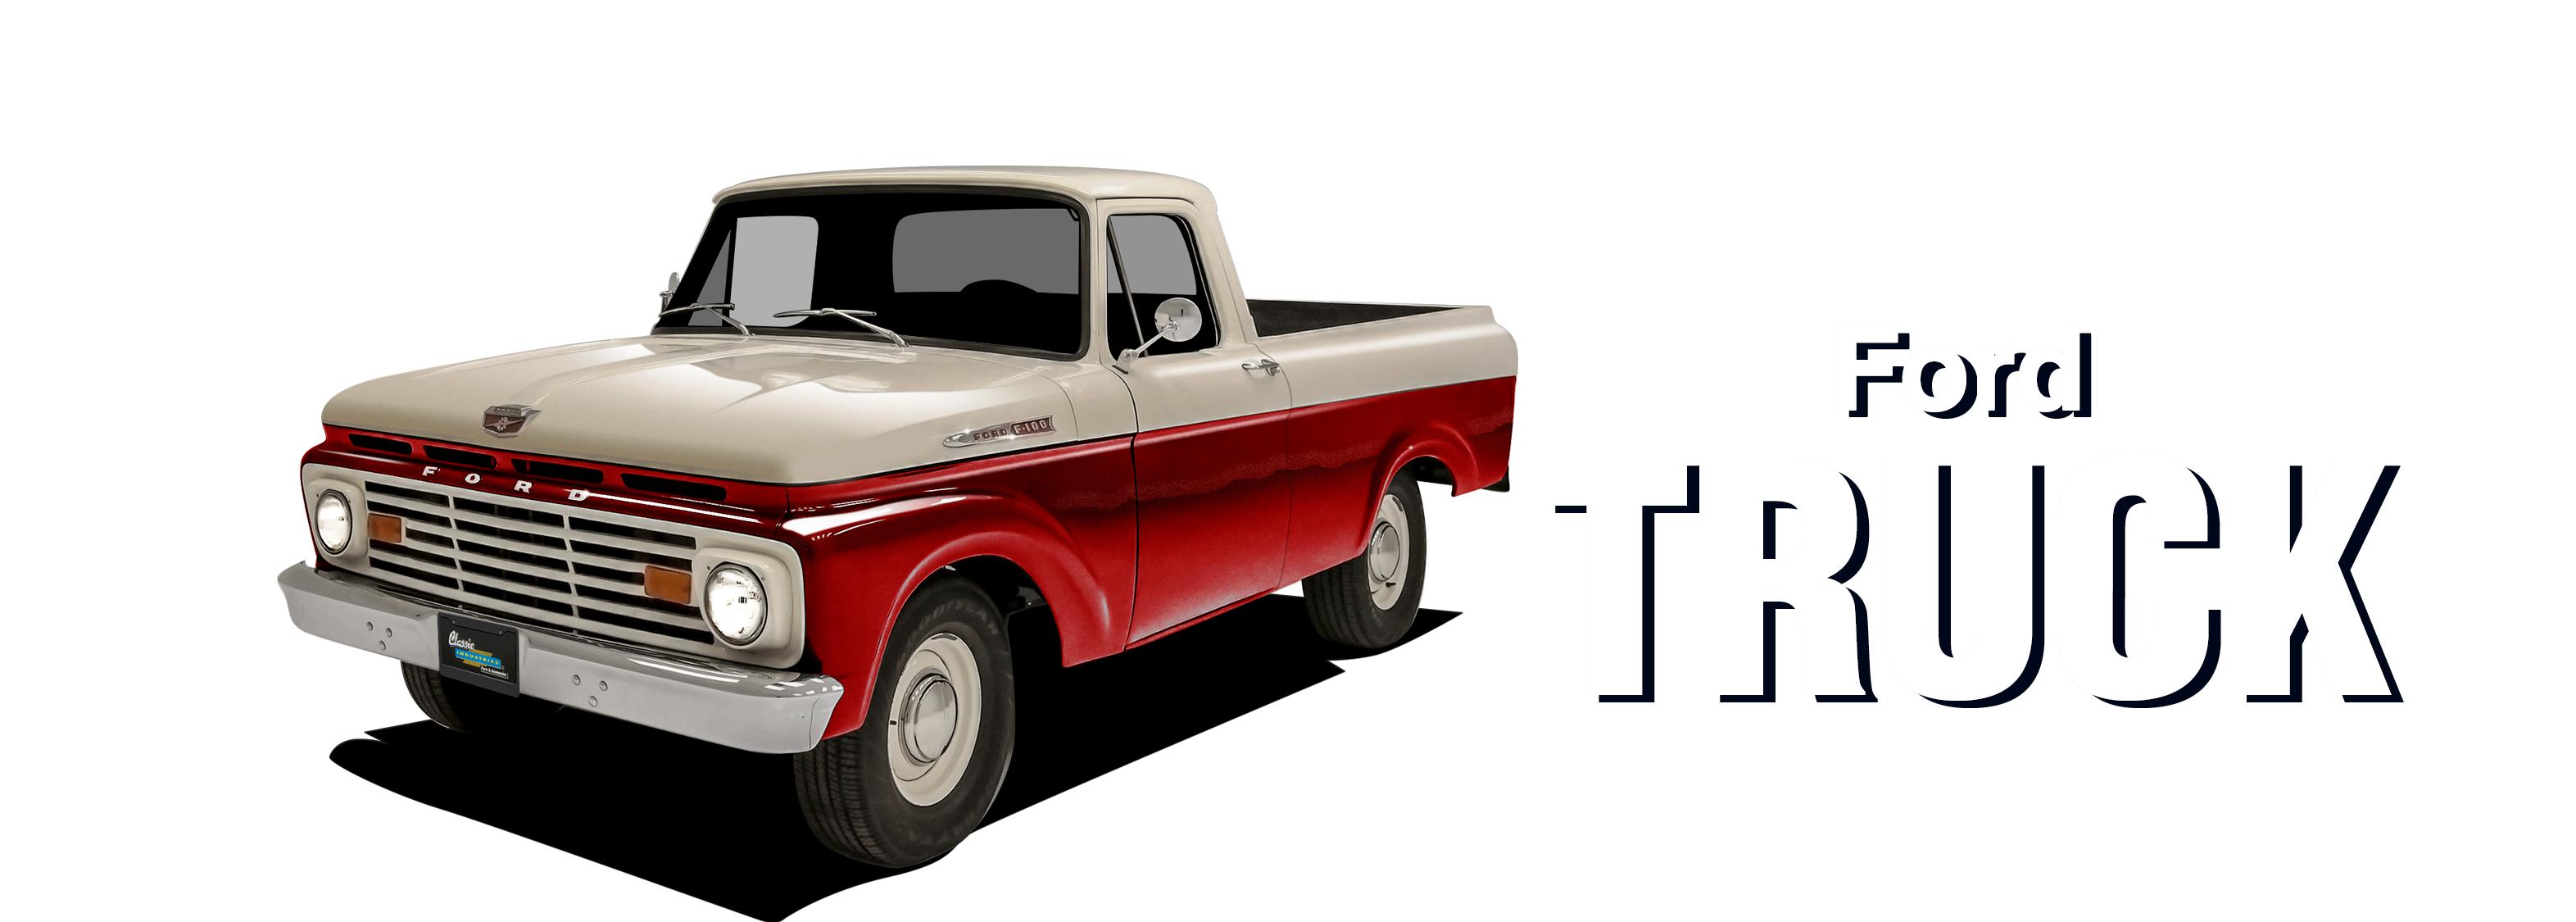 61-66FordTruck-vehicle-desktop_v3